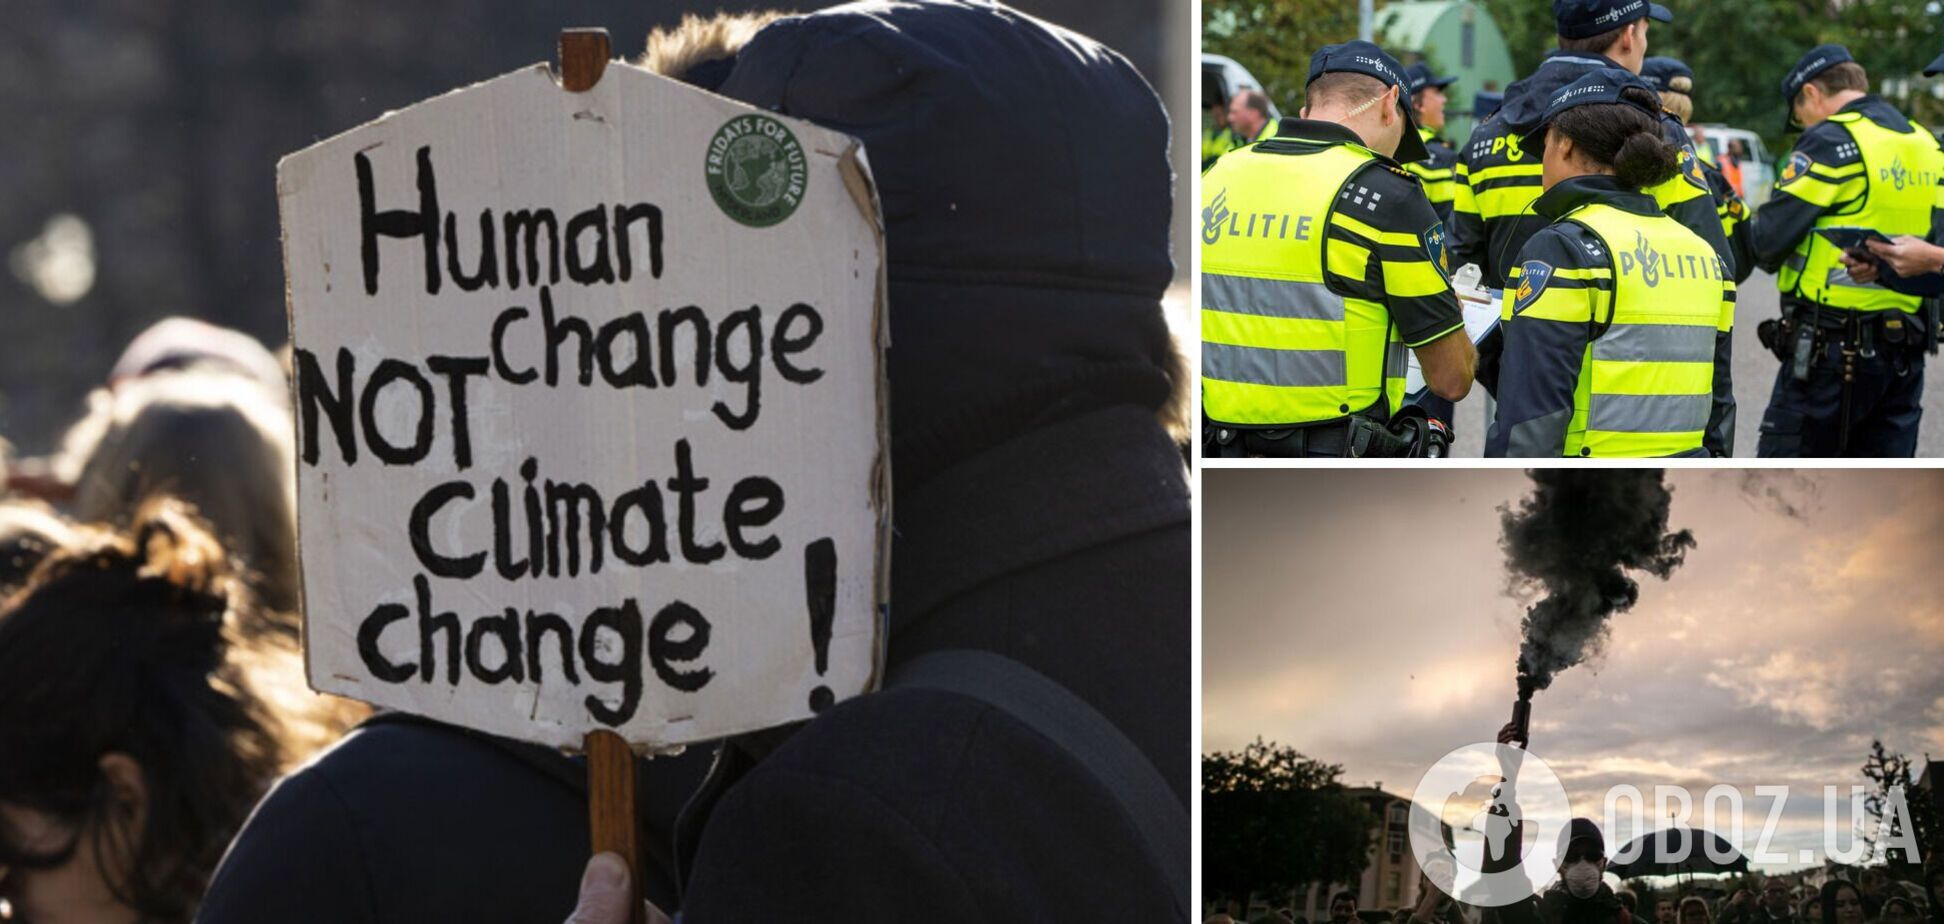 Блокировали ключевую трассу: на климатической демонстрации в Гааге задержали сотни экоактивистов. Фото и видео